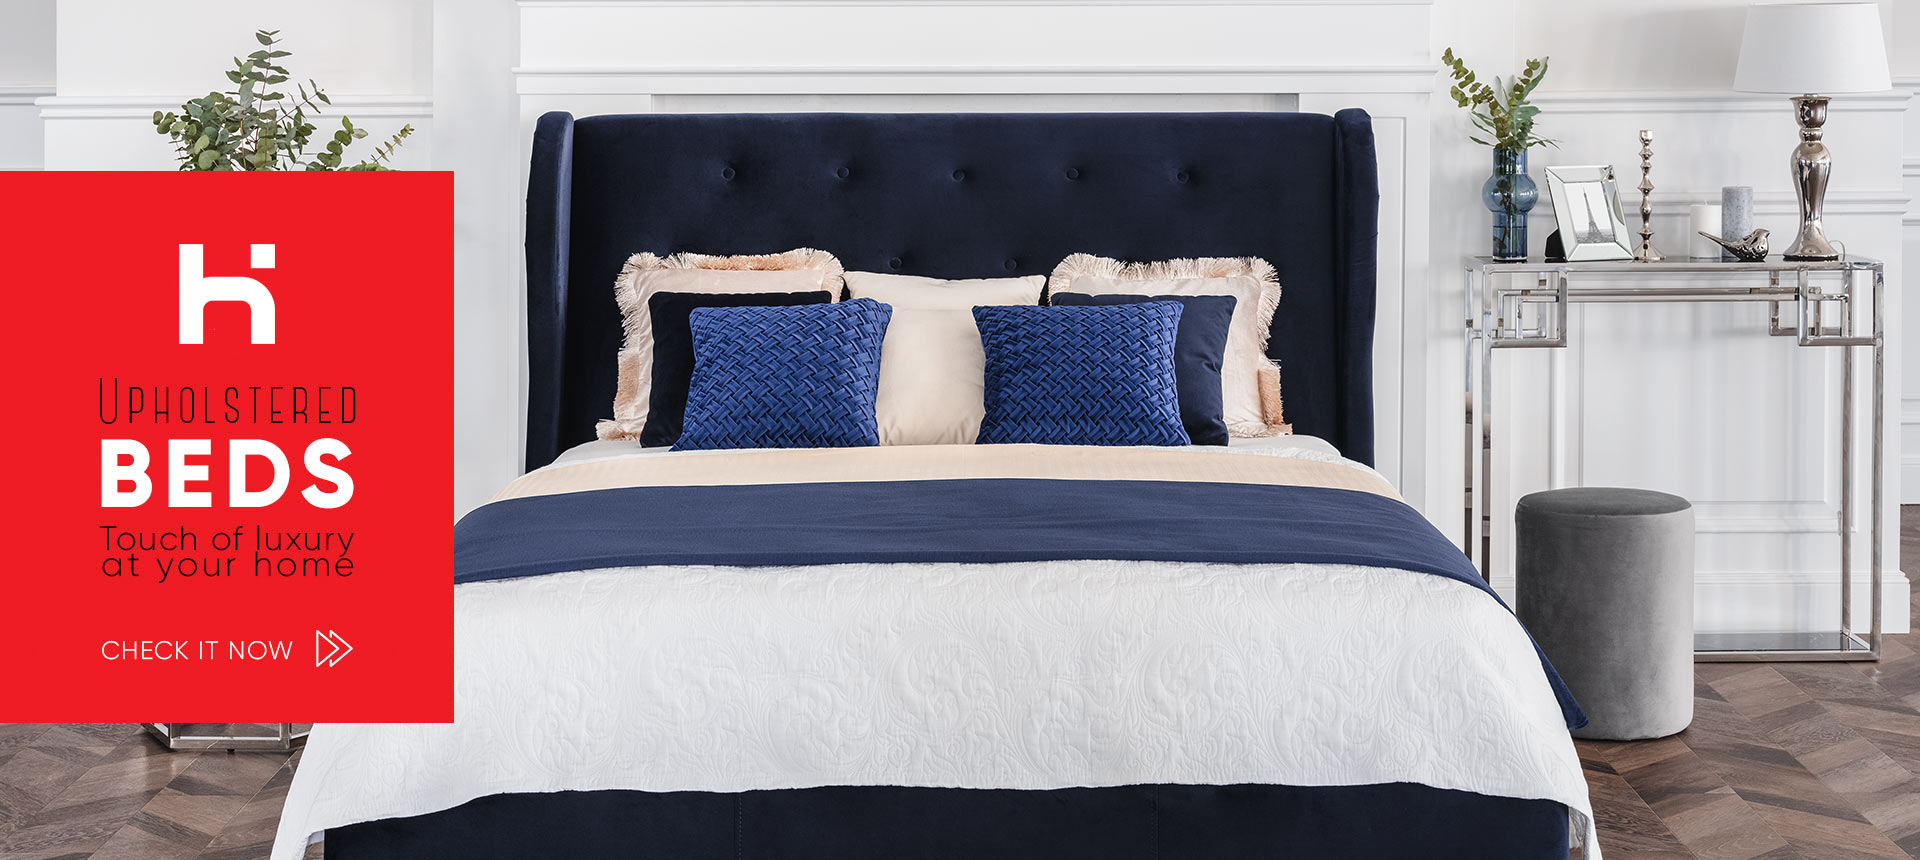 Upholstered beds - Online store Smart Furniture Mississauga